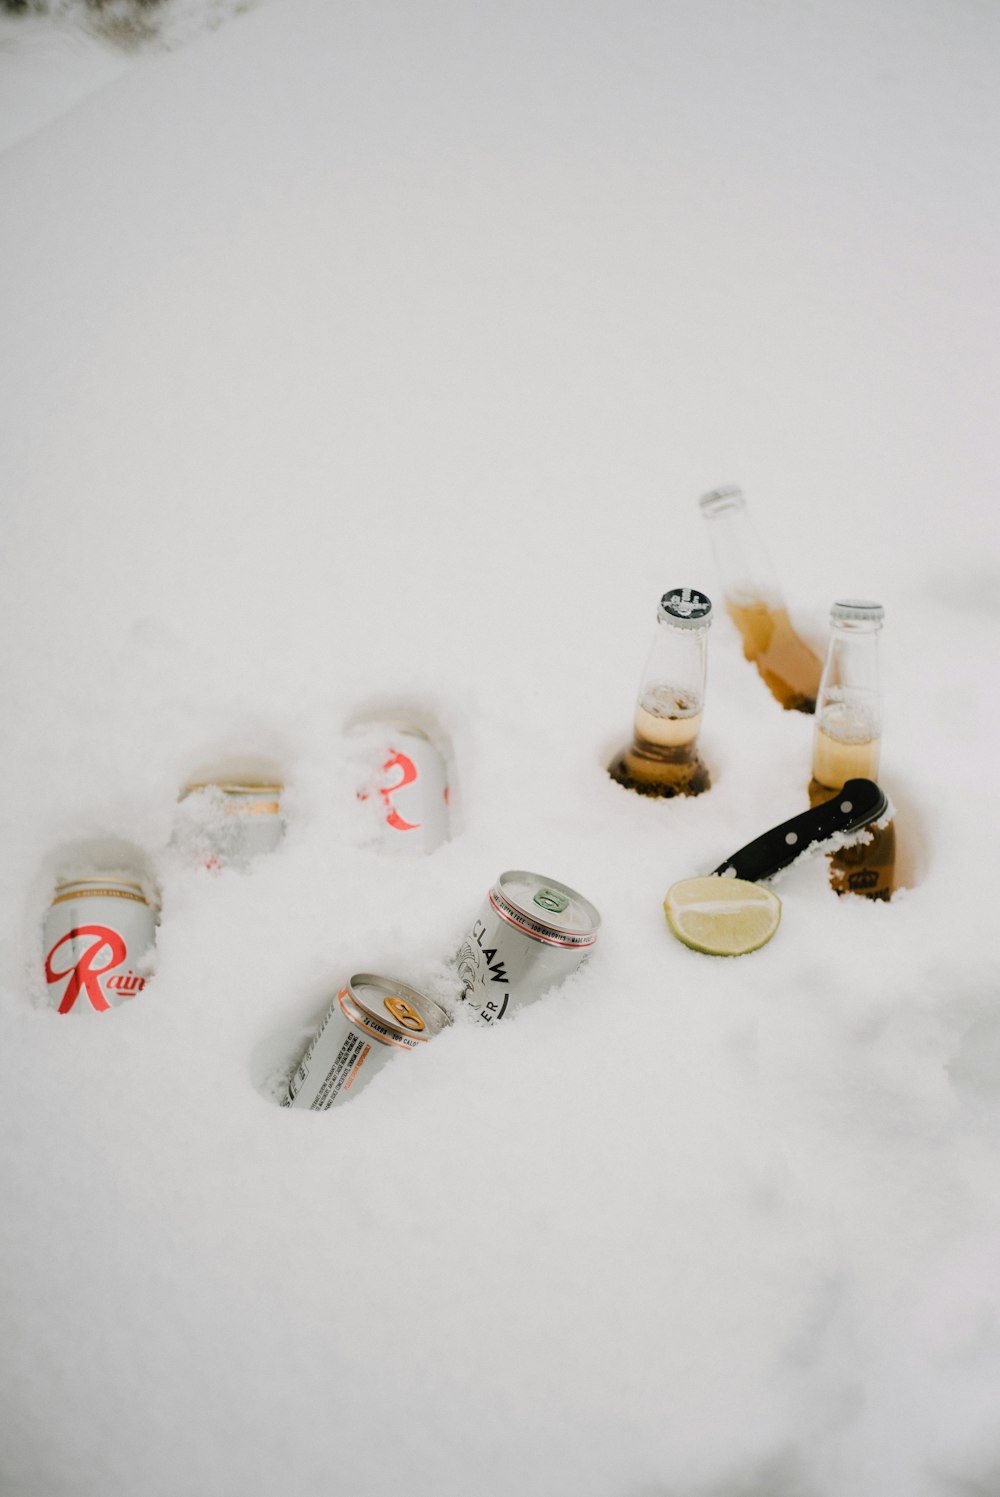 garrafas de vidro transparente na neve branca